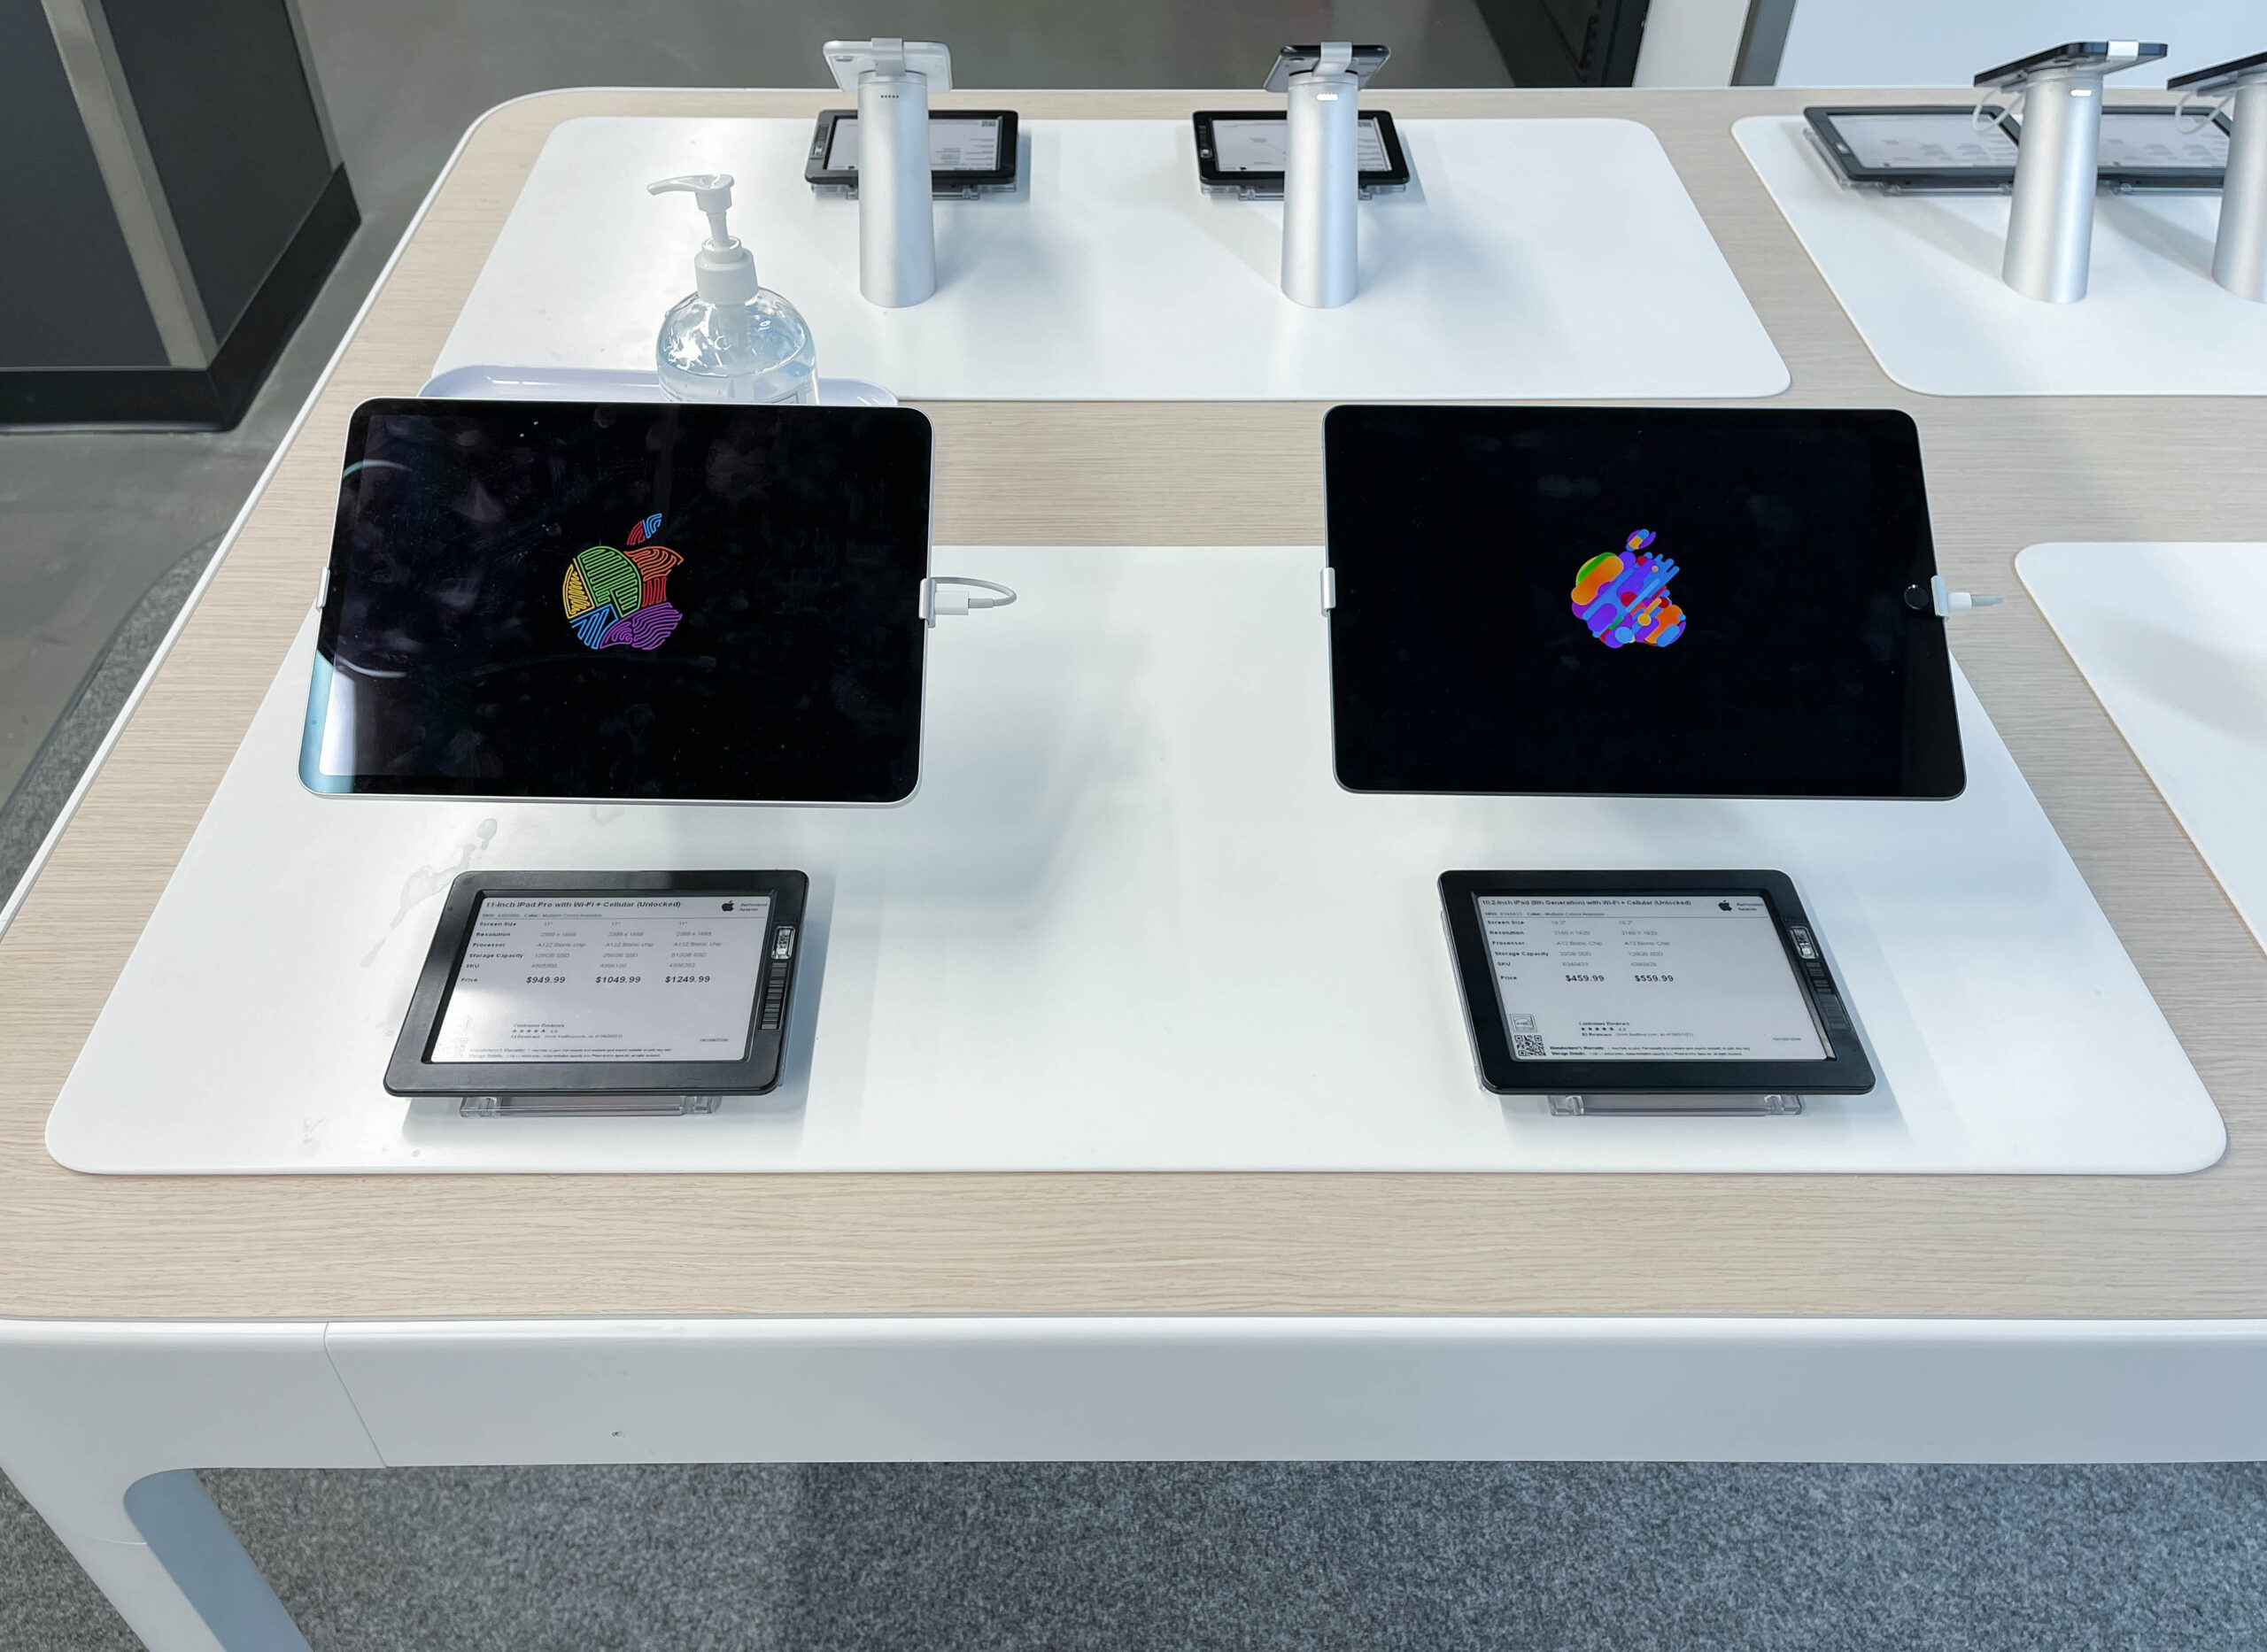 蘋果經銷商最新產品展示系統